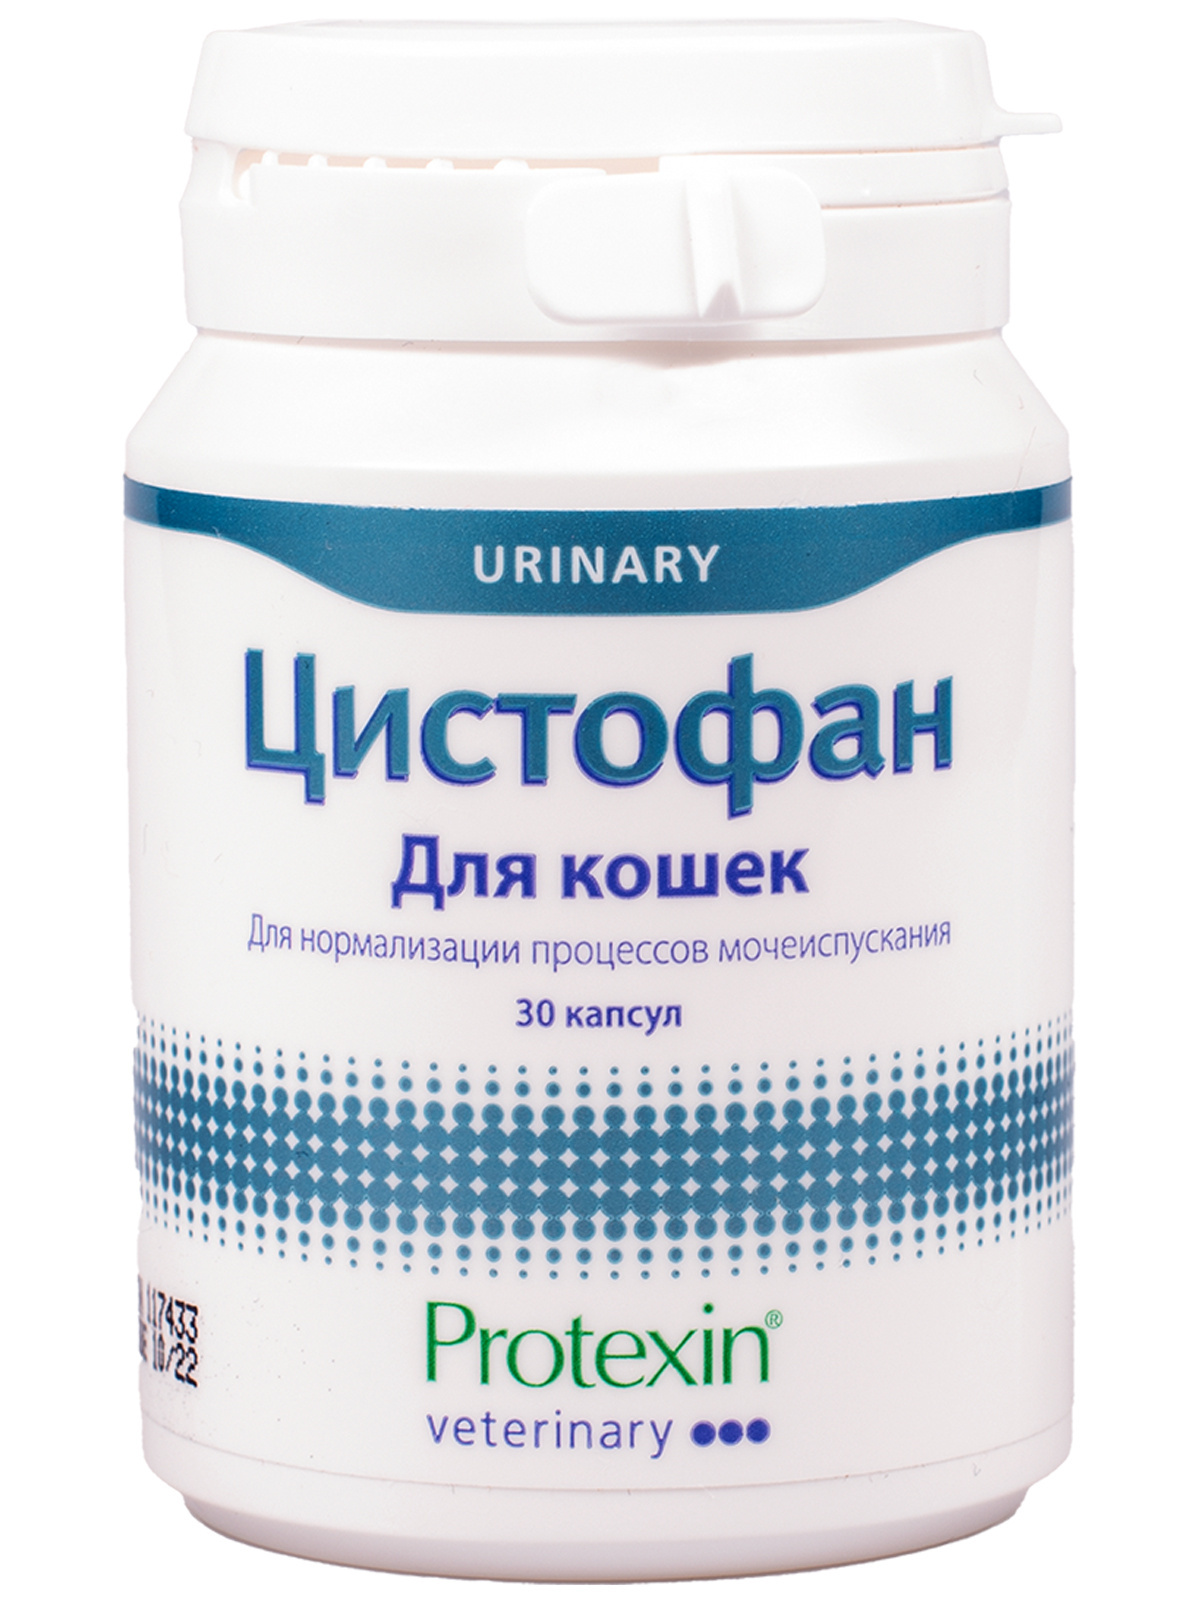 Protexin цистофан 30 капсул (30 шт)